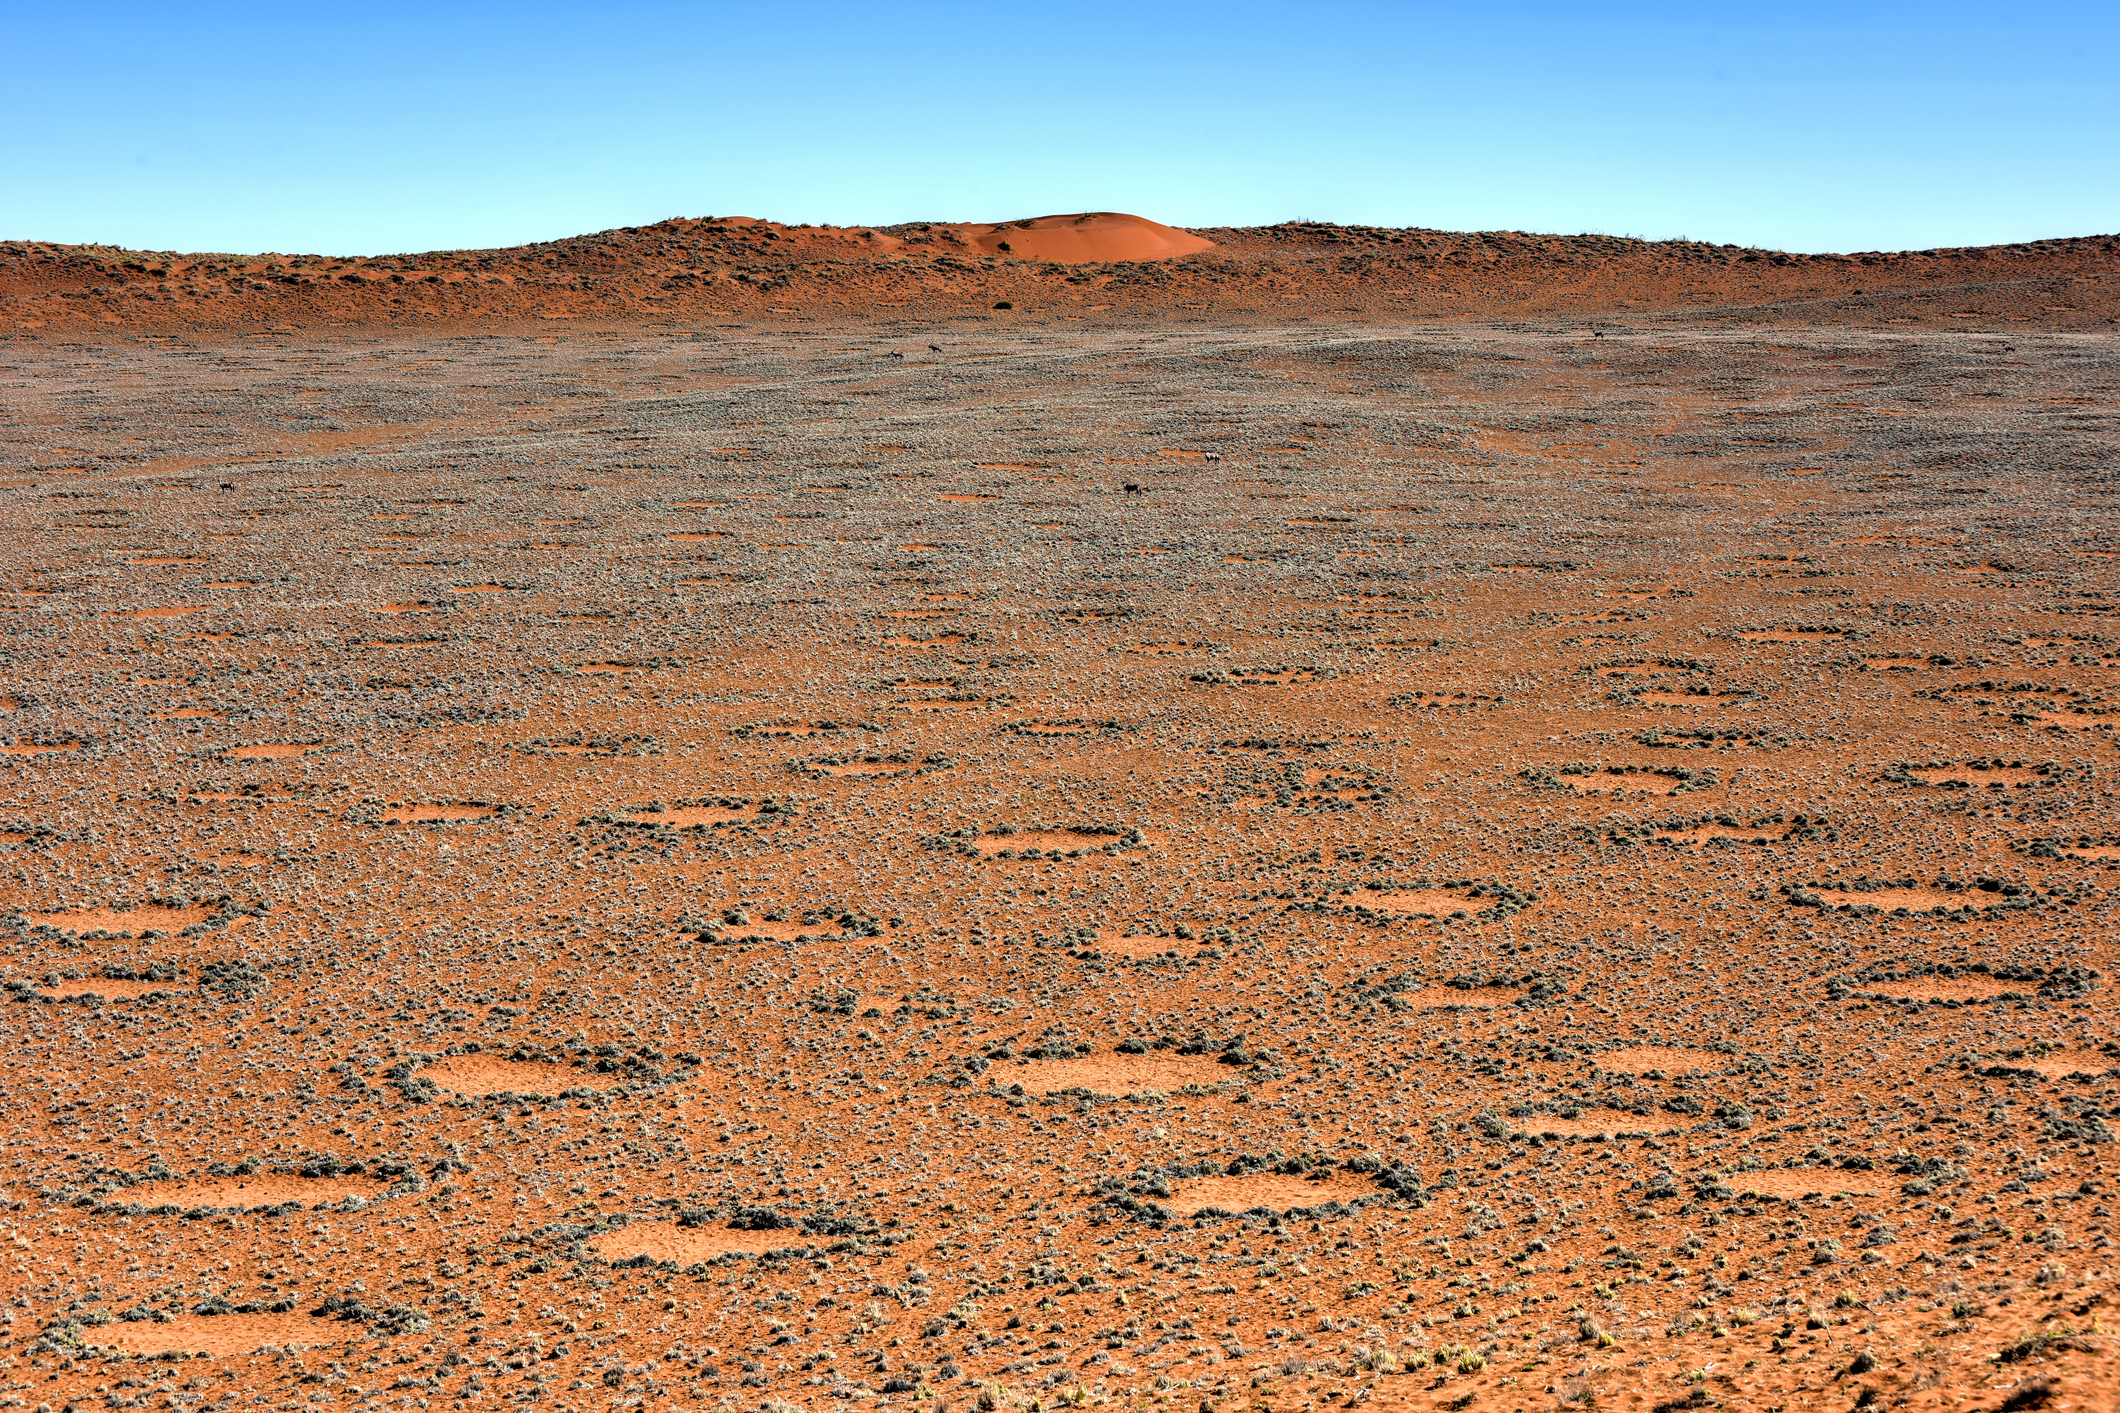 <p><strong>Мистериозните приказни кръгове в Намибия </strong></p></p><br /><br />
<p><p>В пасищата на пустинята в Южна Африка се откриват поредици от голи петна по земята. Тези кръгове са разположени на разстояние 2 и 15 метра. Обектите не са проучвани обстойно, тъй като най-близкото населено място е на 180 км. Местните разказват, че кръговете са дело на дракон, живееш под земната кора, чийто огнен дъх предизвиква мехурчета по повърхността, които изгарят растителността в почти идеални кръгове</p>